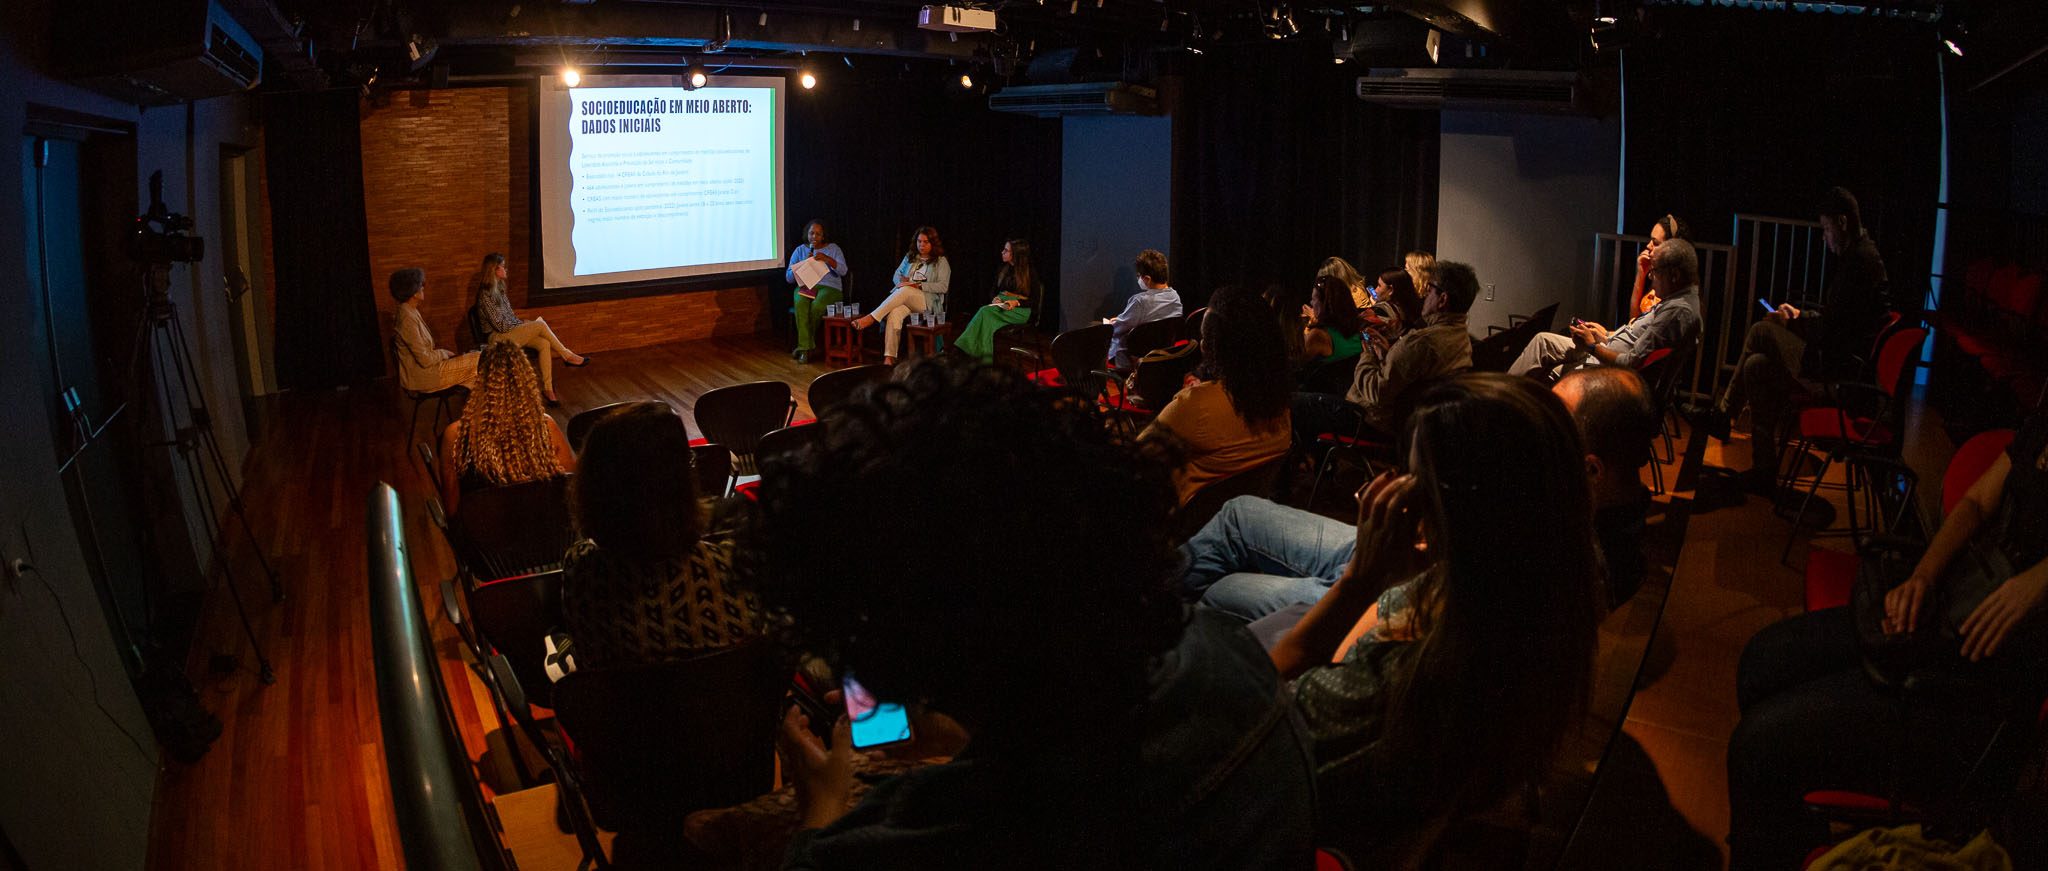 Imagem feita de uma sala mostrando os participantes do evento assistindo ao evento, com palestrantes e projeção de imagem ao fundo